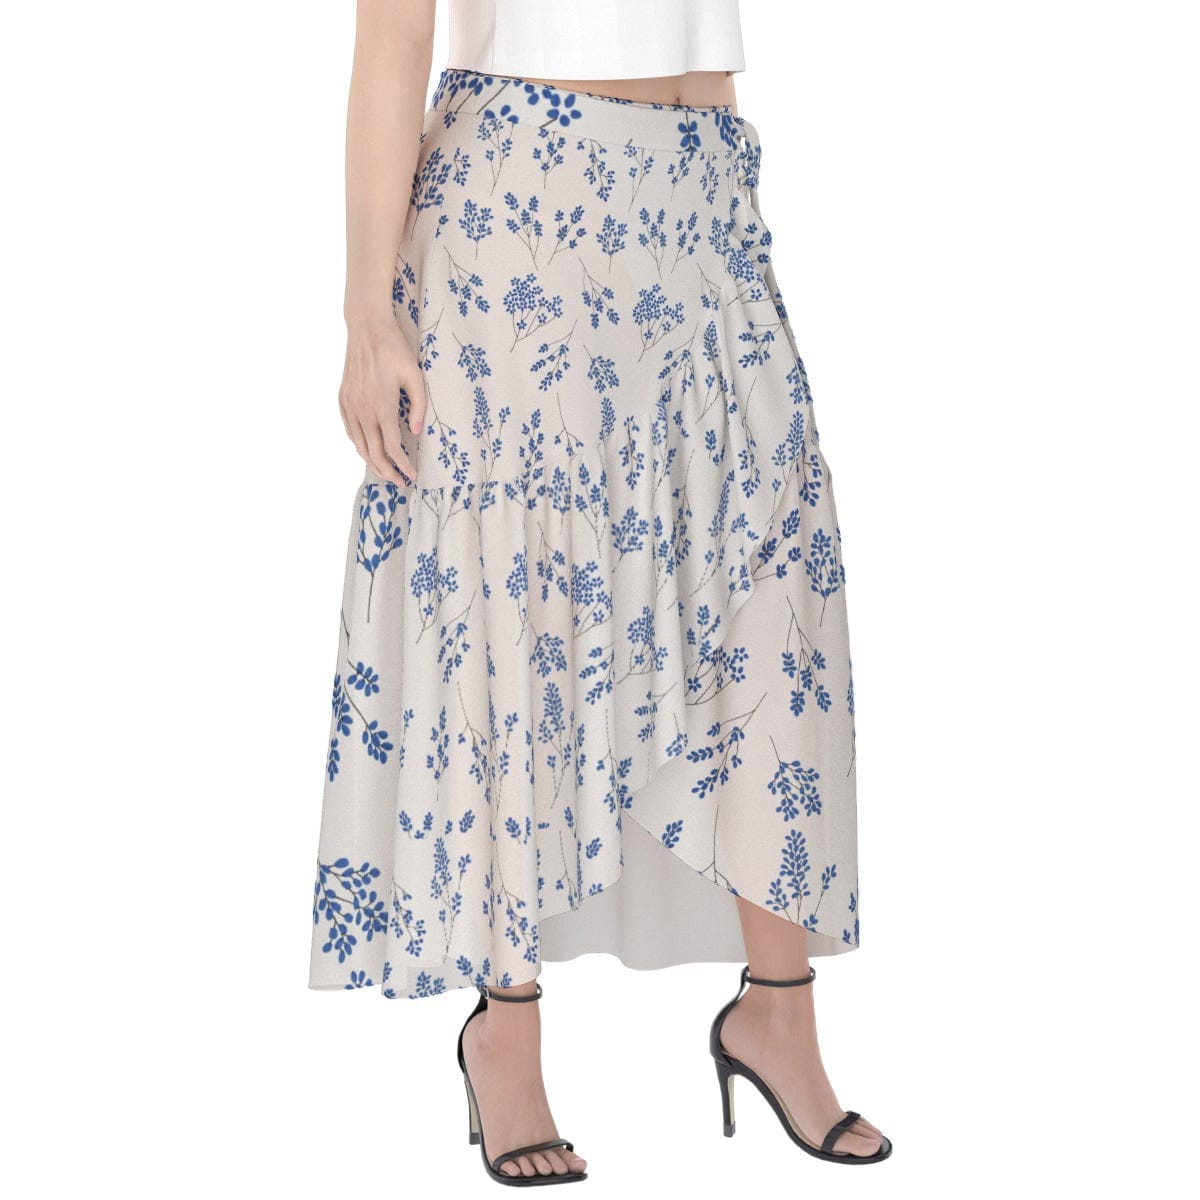 Yoycol Skirt Ecru Blue Floral - Print Women's Wrap Skirt